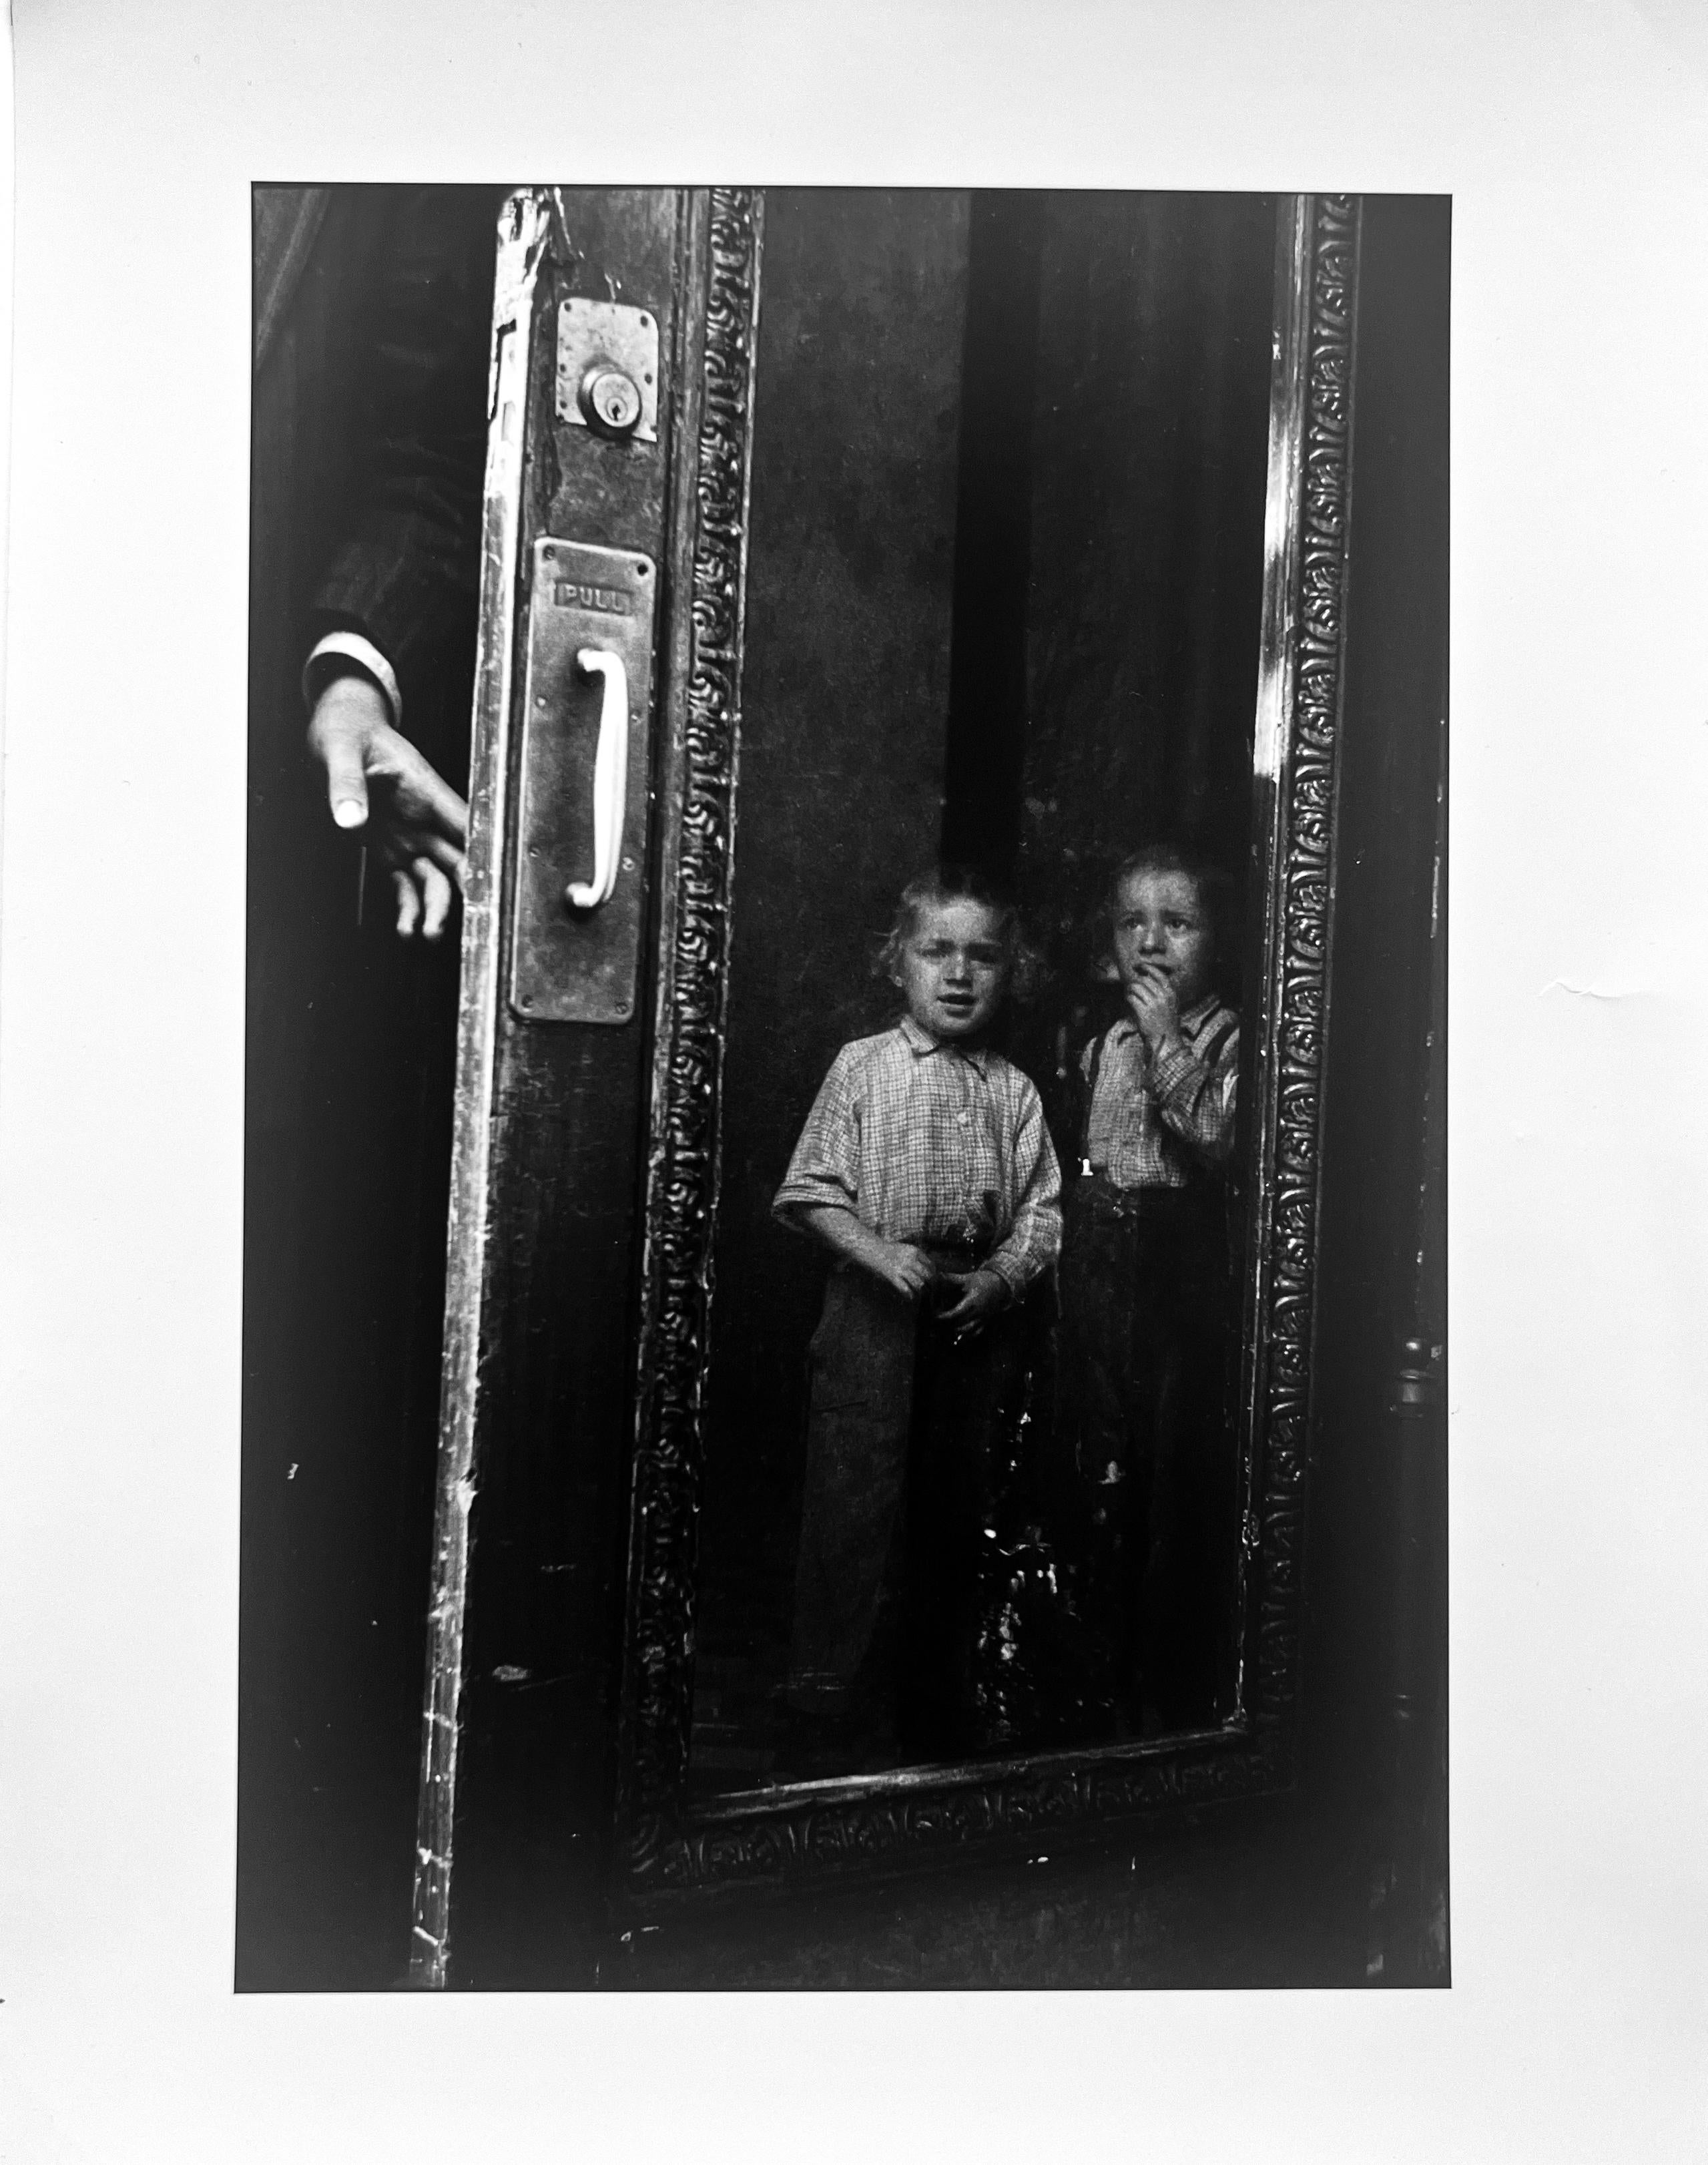 Yeshiva Boys, Schwarz-Weiß-Fotografie 1950s Jewish Diaspora Brooklyn, USA